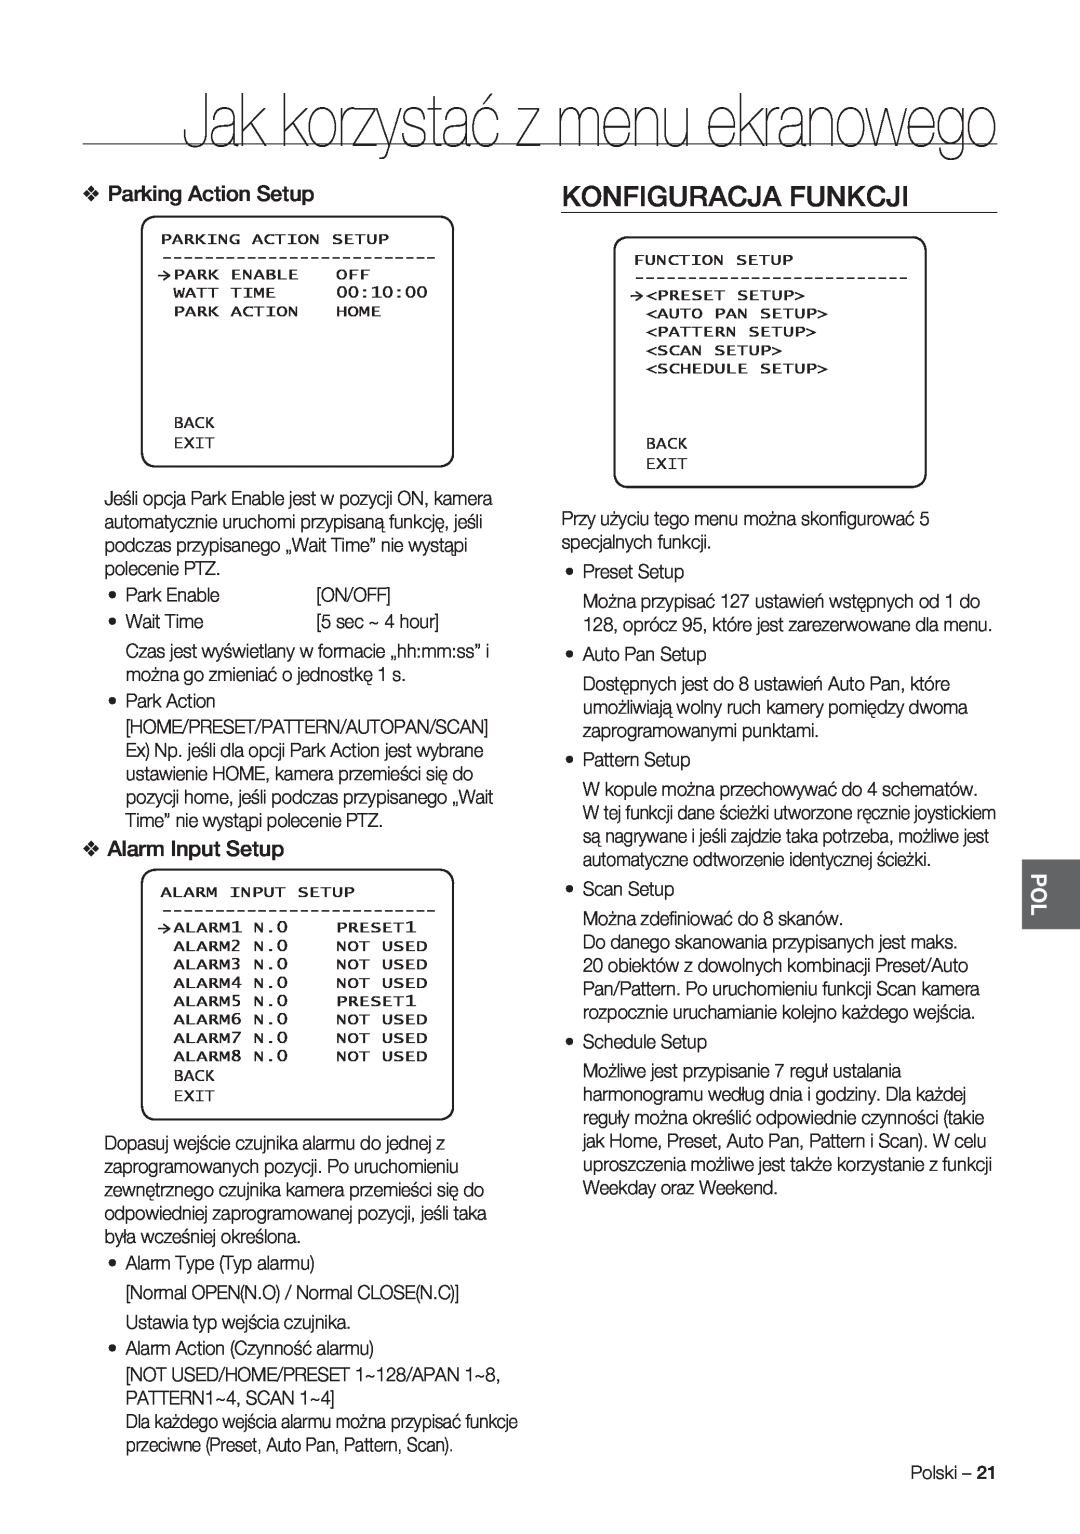 Samsung SCC-C7478P manual Konfiguracja Funkcji, Jak korzystać z menu ekranowego, Parking Action Setup, Alarm Input Setup 